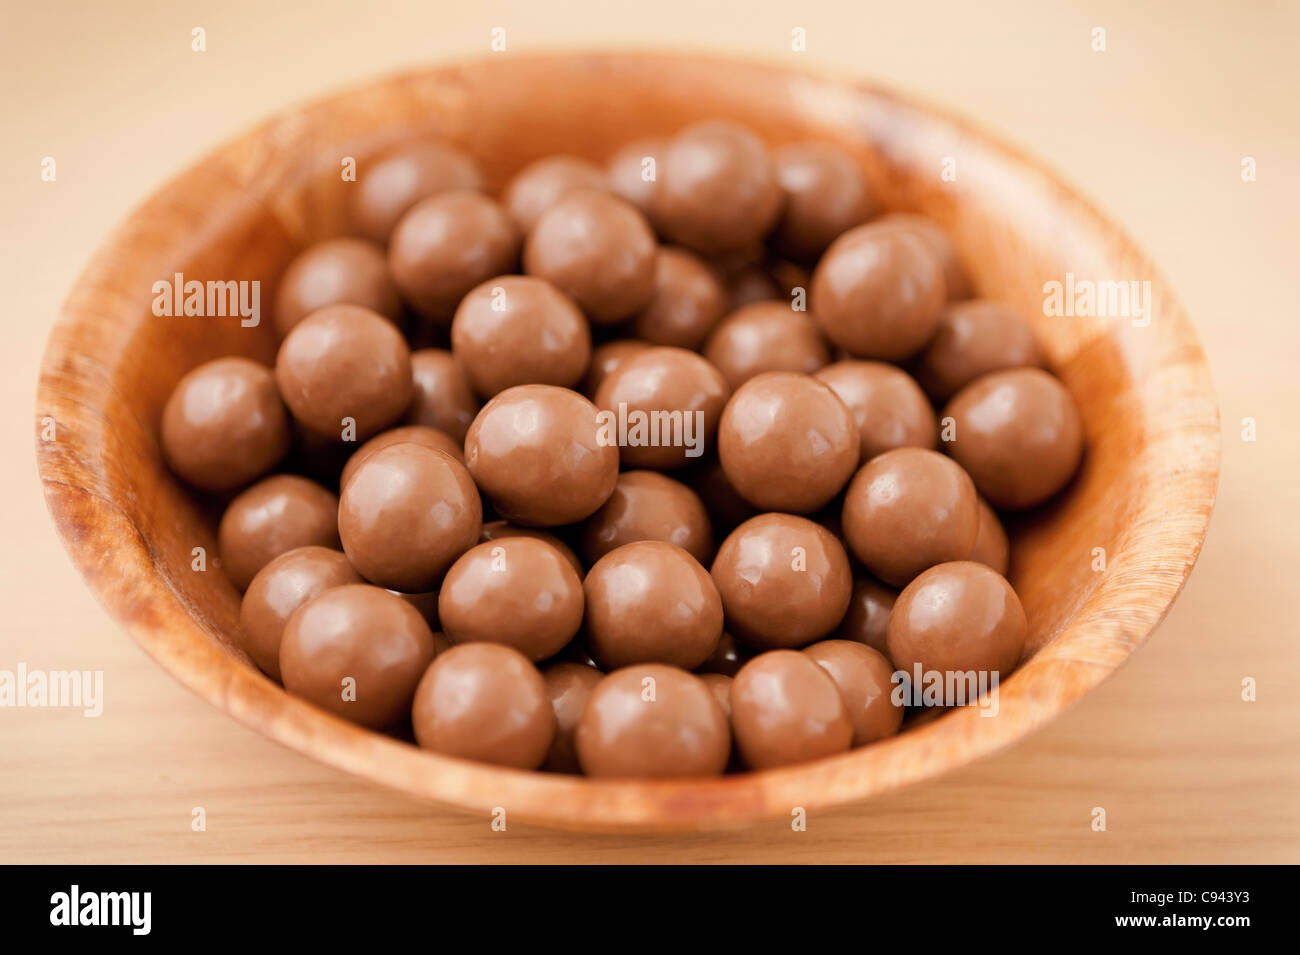 Détail d'un bol en bois contenant des billes de chocolat au lait délicieux sur une surface en bois Banque D'Images